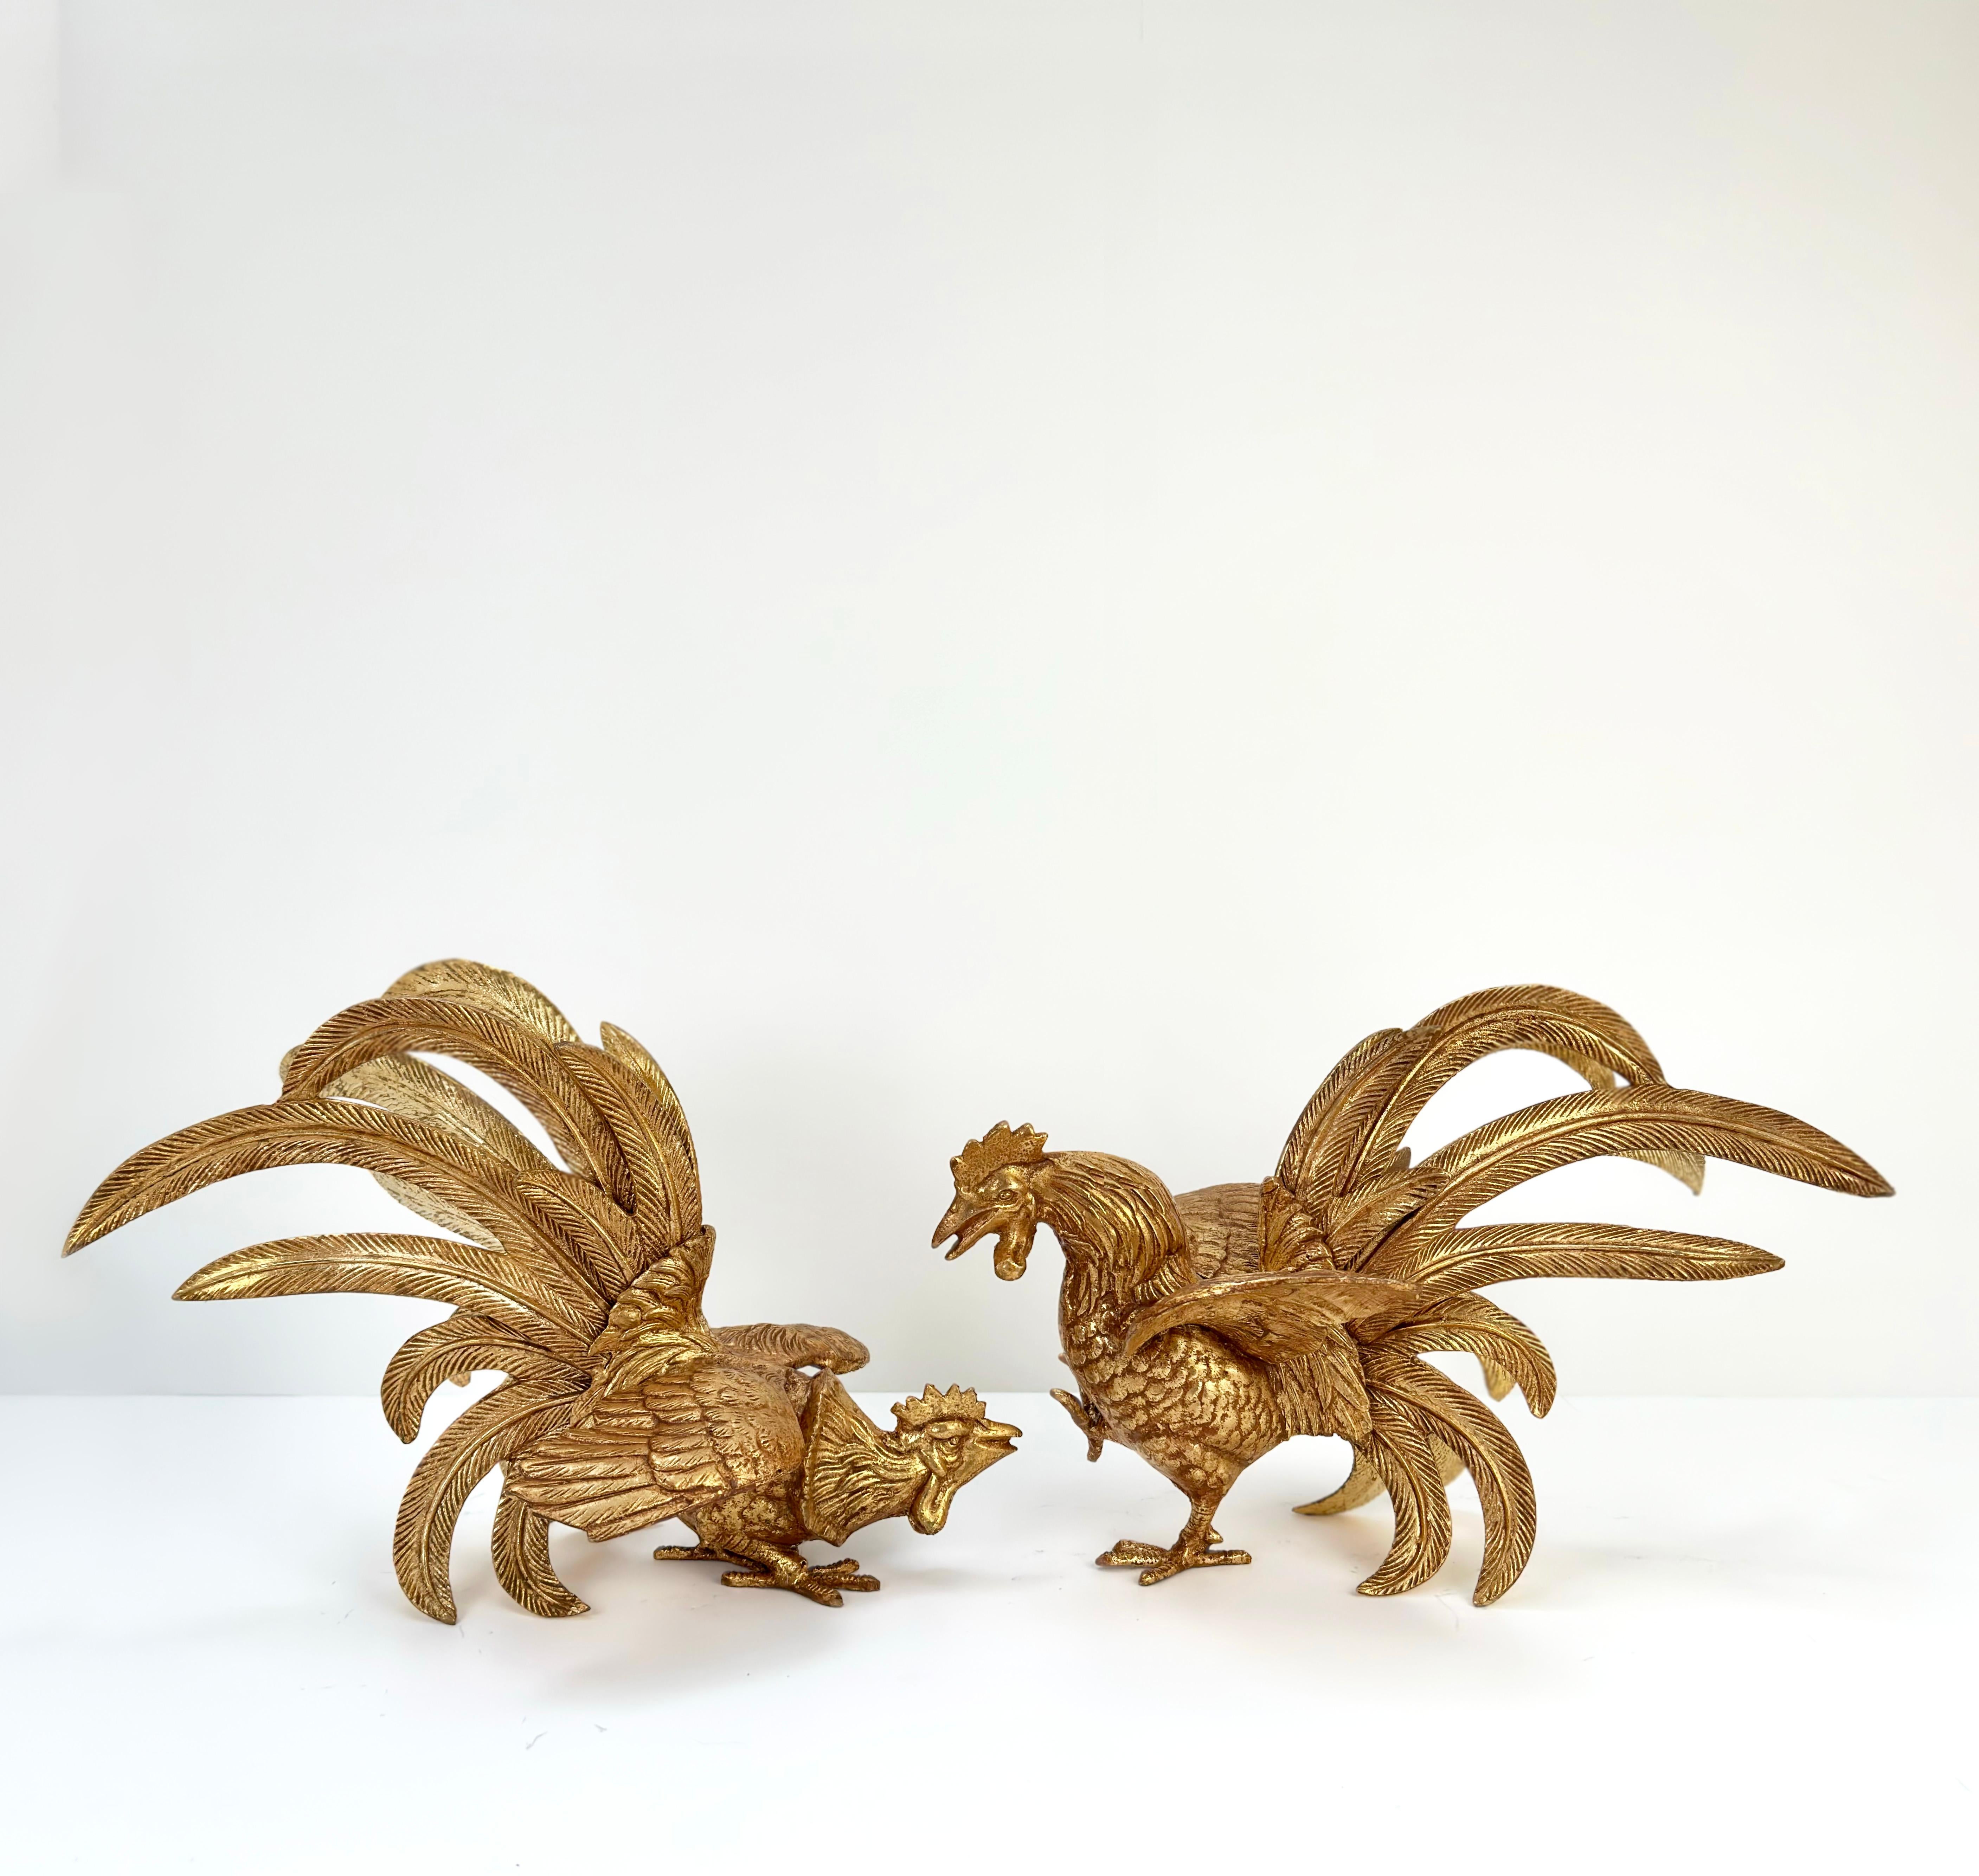 Paire d'ornements en bronze doré faits à la main au milieu du siècle, représentant des coqs de combat  du Japon

Décorez votre espace et ajoutez une touche d'opulence avec cette paire d'ornements en forme de coq de combat japonais.

Fabriquée au